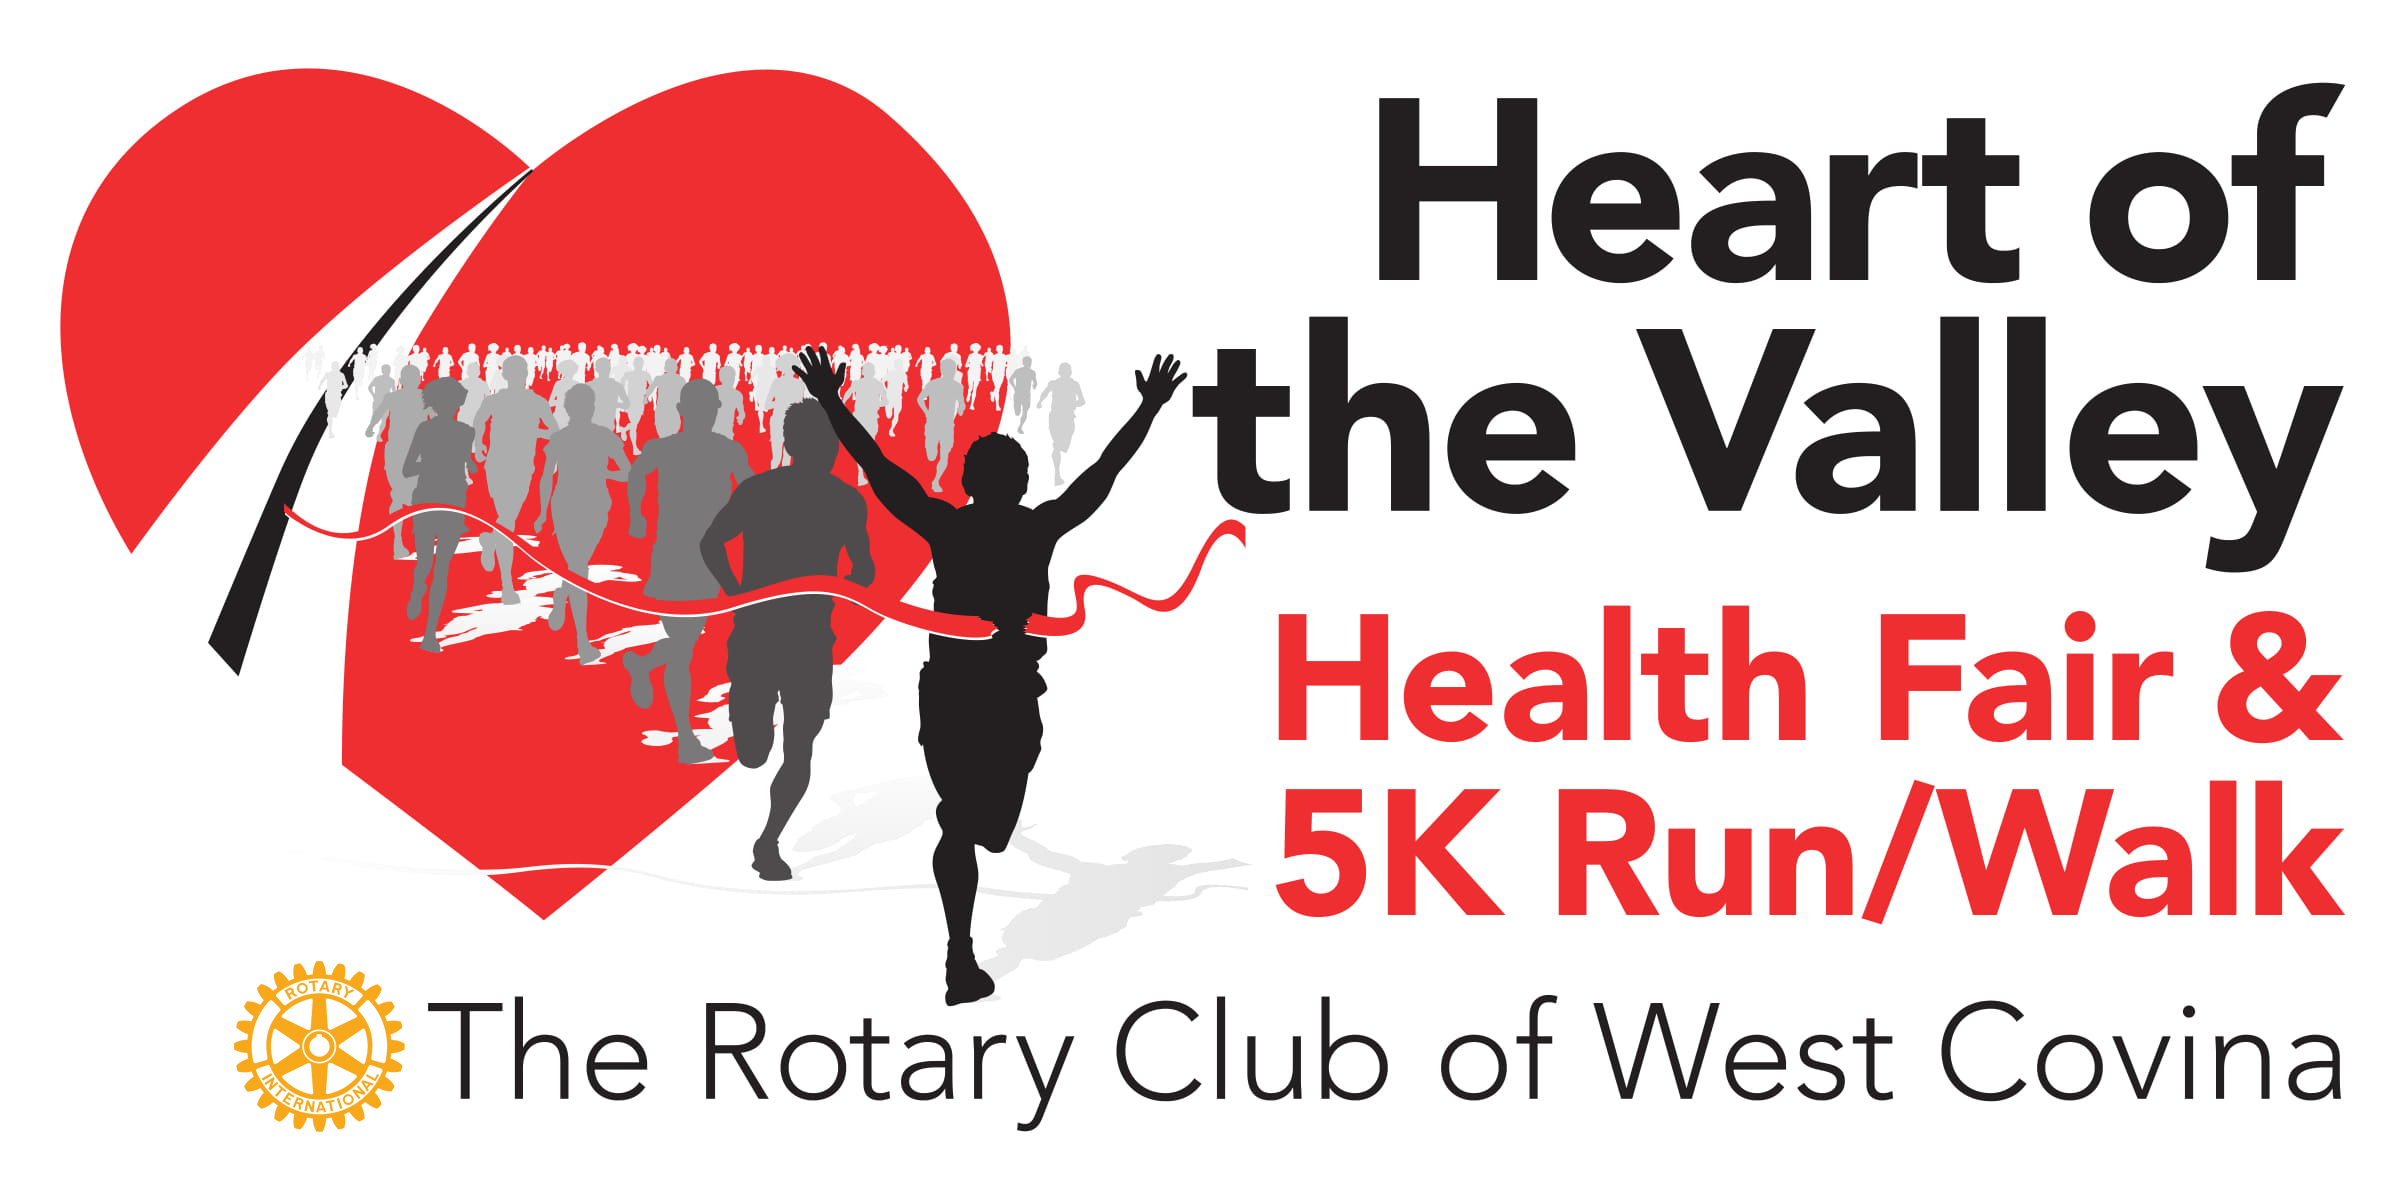 HEART OF THE VALLEY HEALTH FAIR/5K run